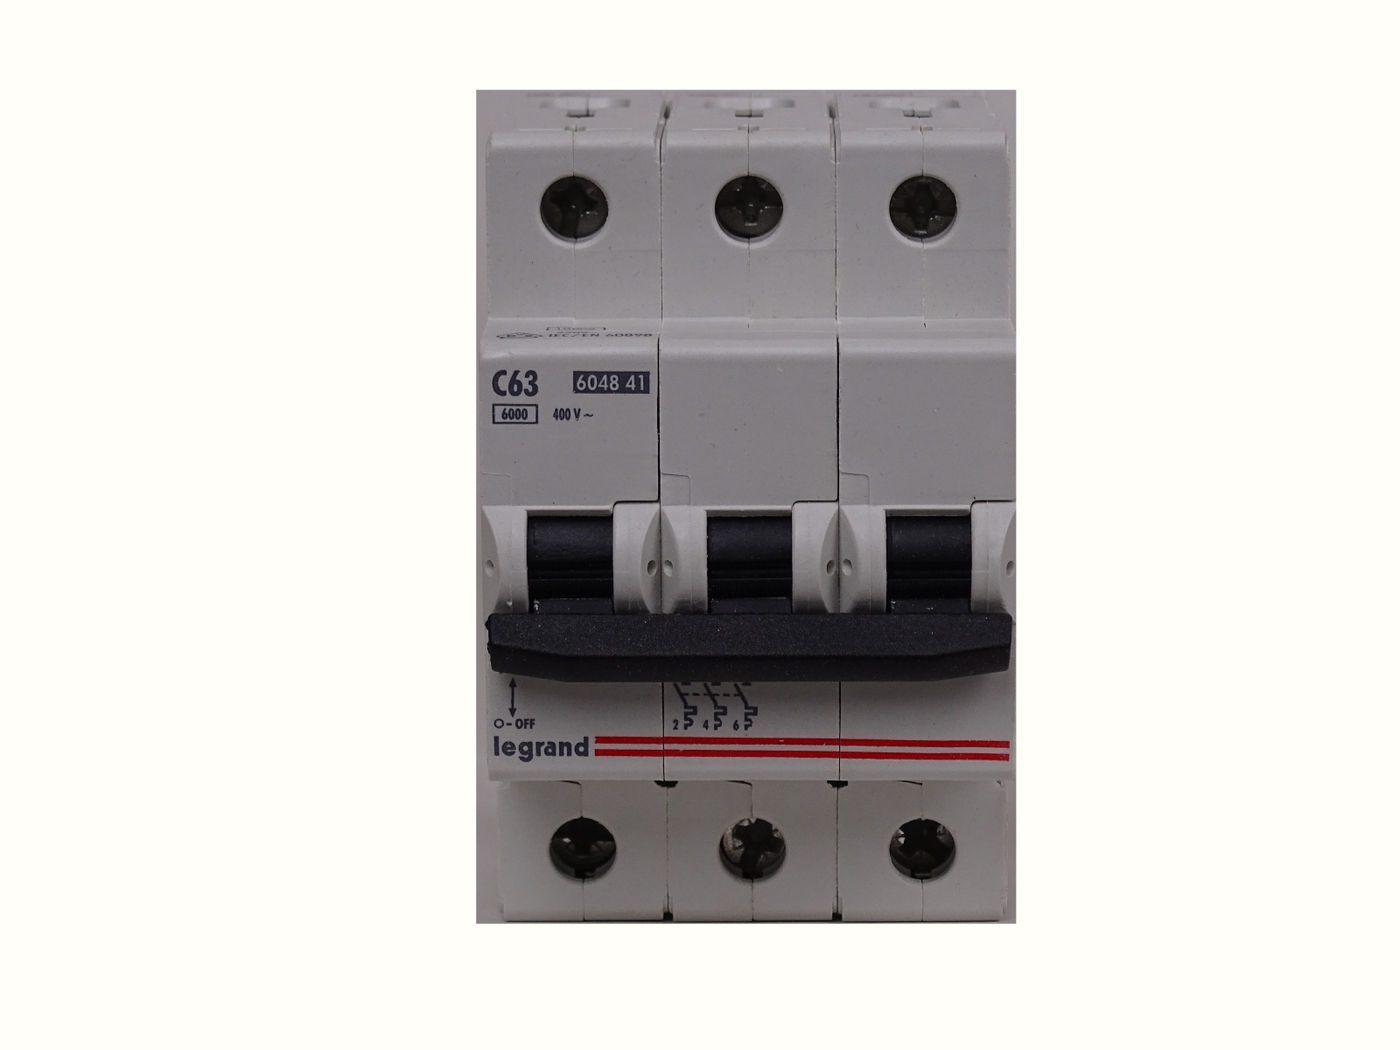 Автоматические выключатели lr. Автоматический двухполюсный выключатель LR 3a 6048 02. Legrand 604841. Logrand 63a 604841 60898.